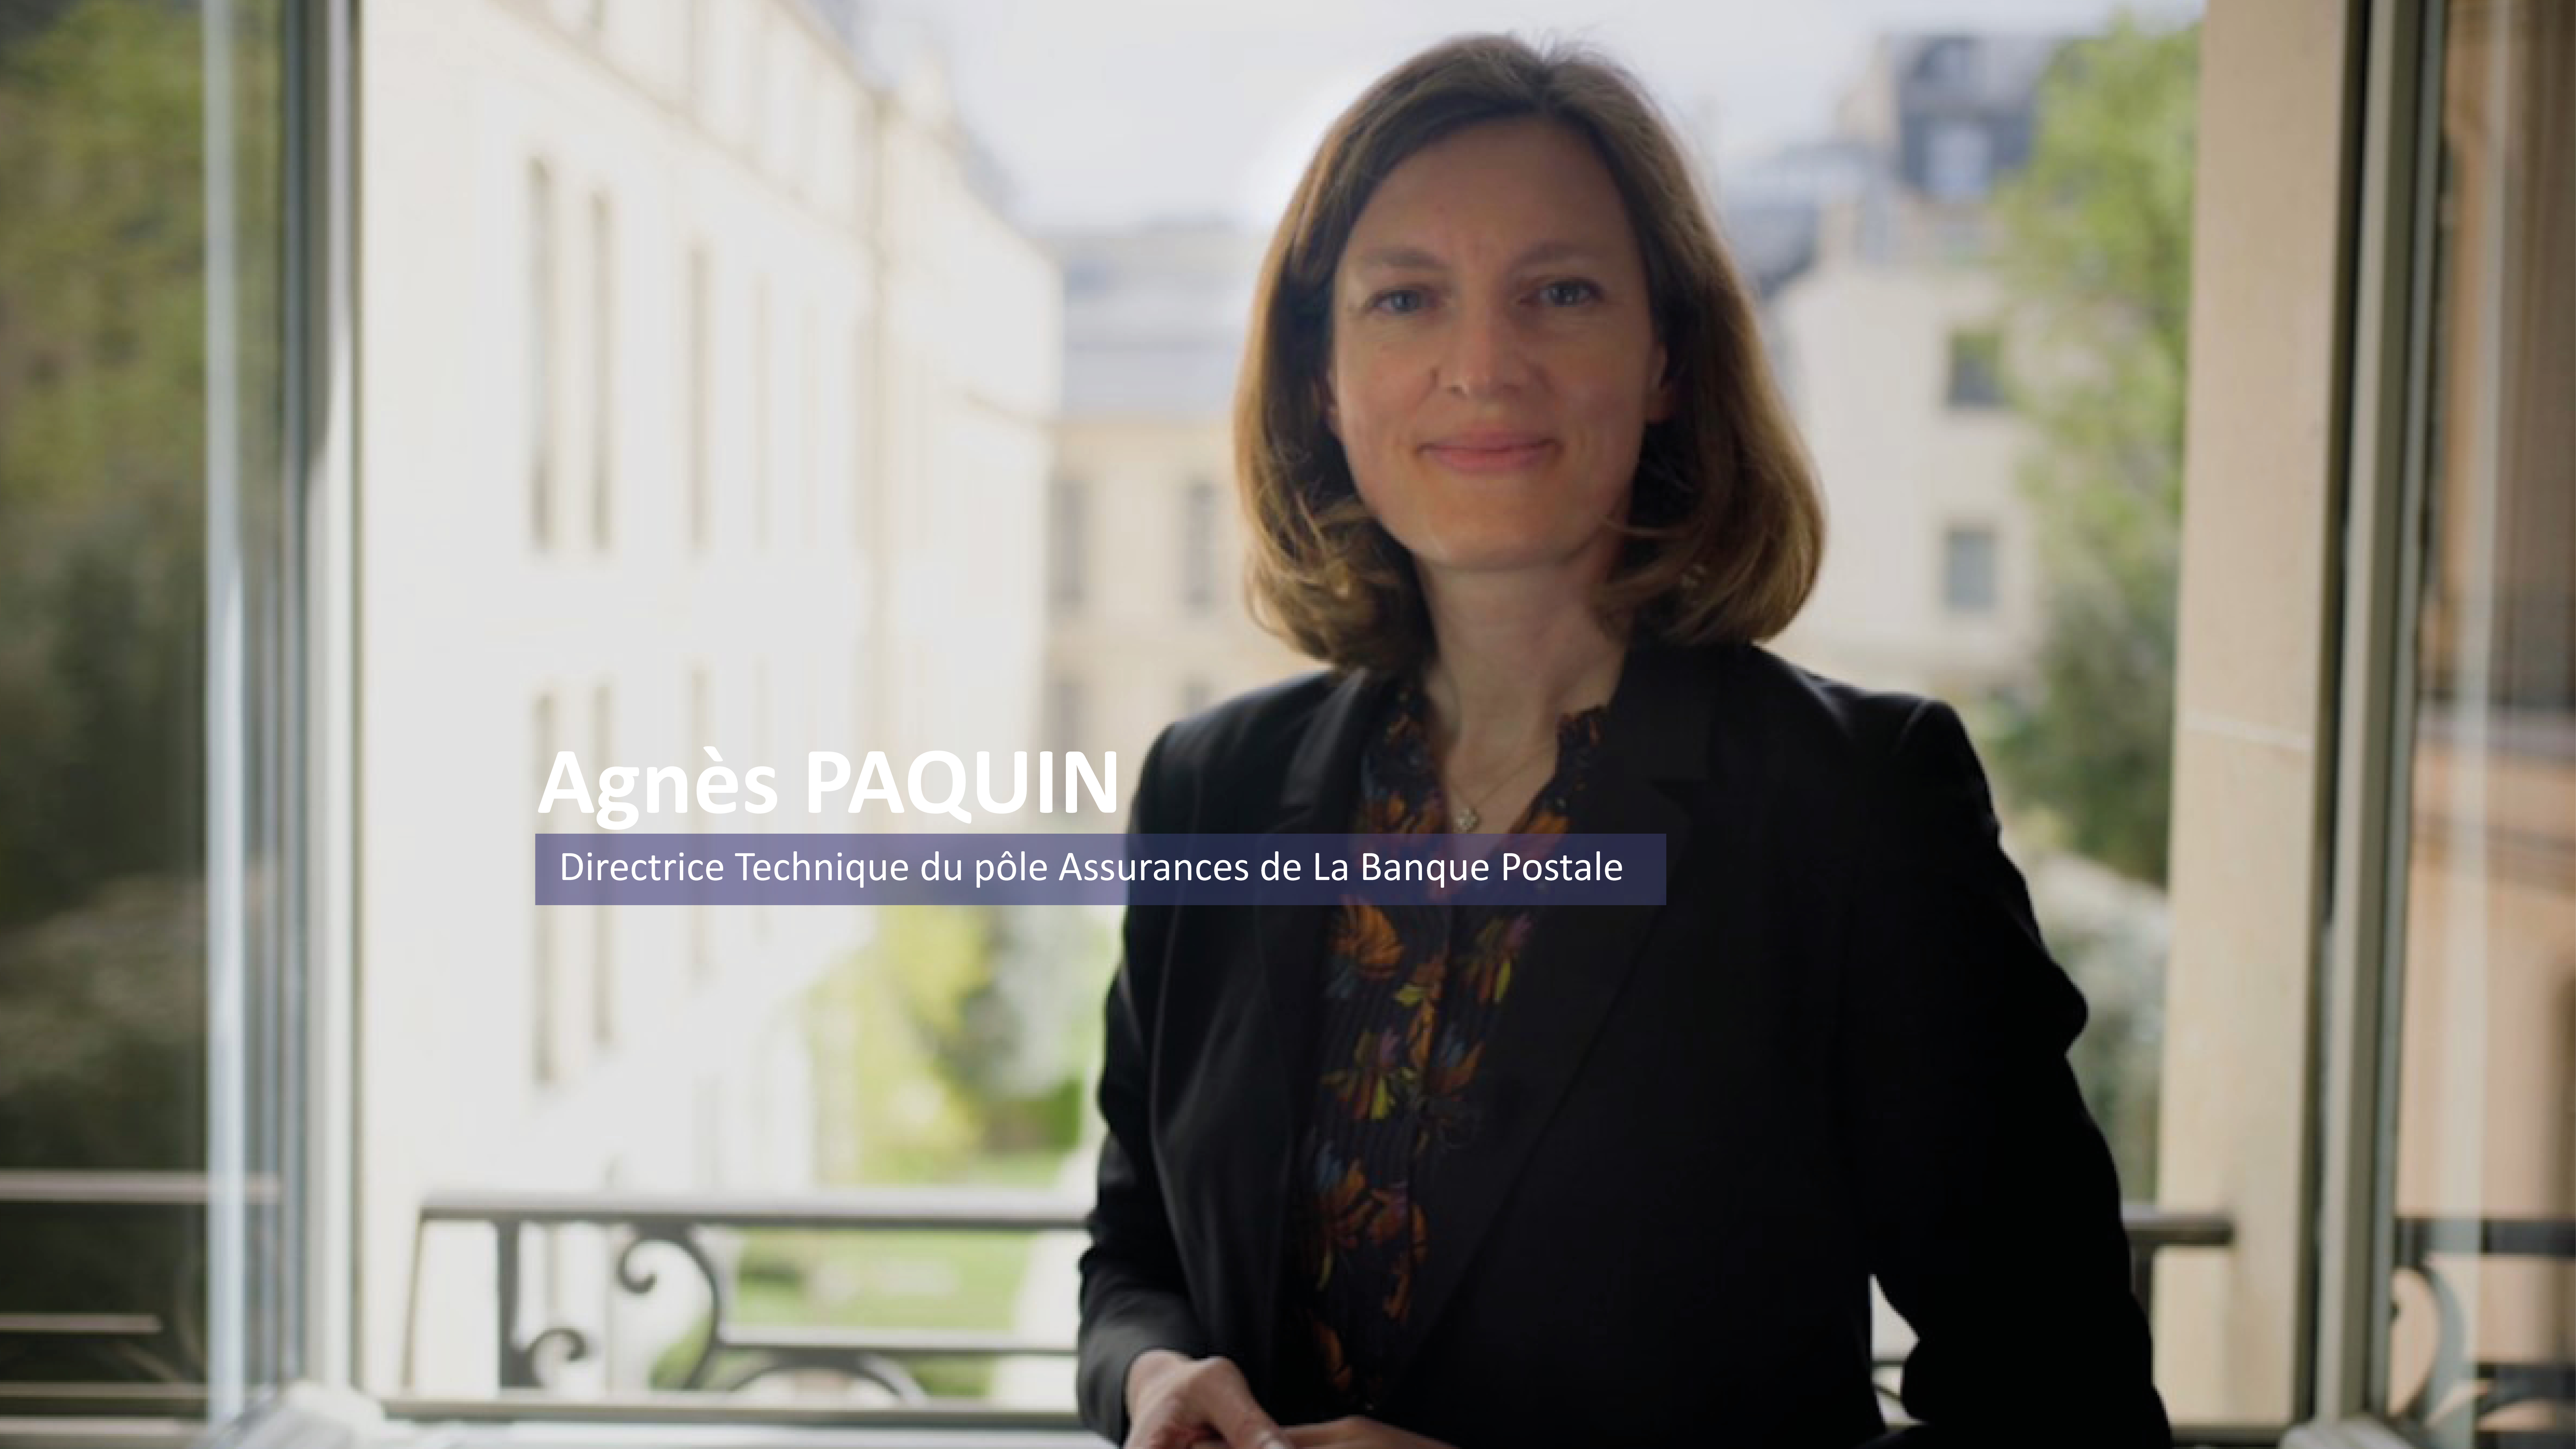 Episode 1</br>Agnès PAQUIN